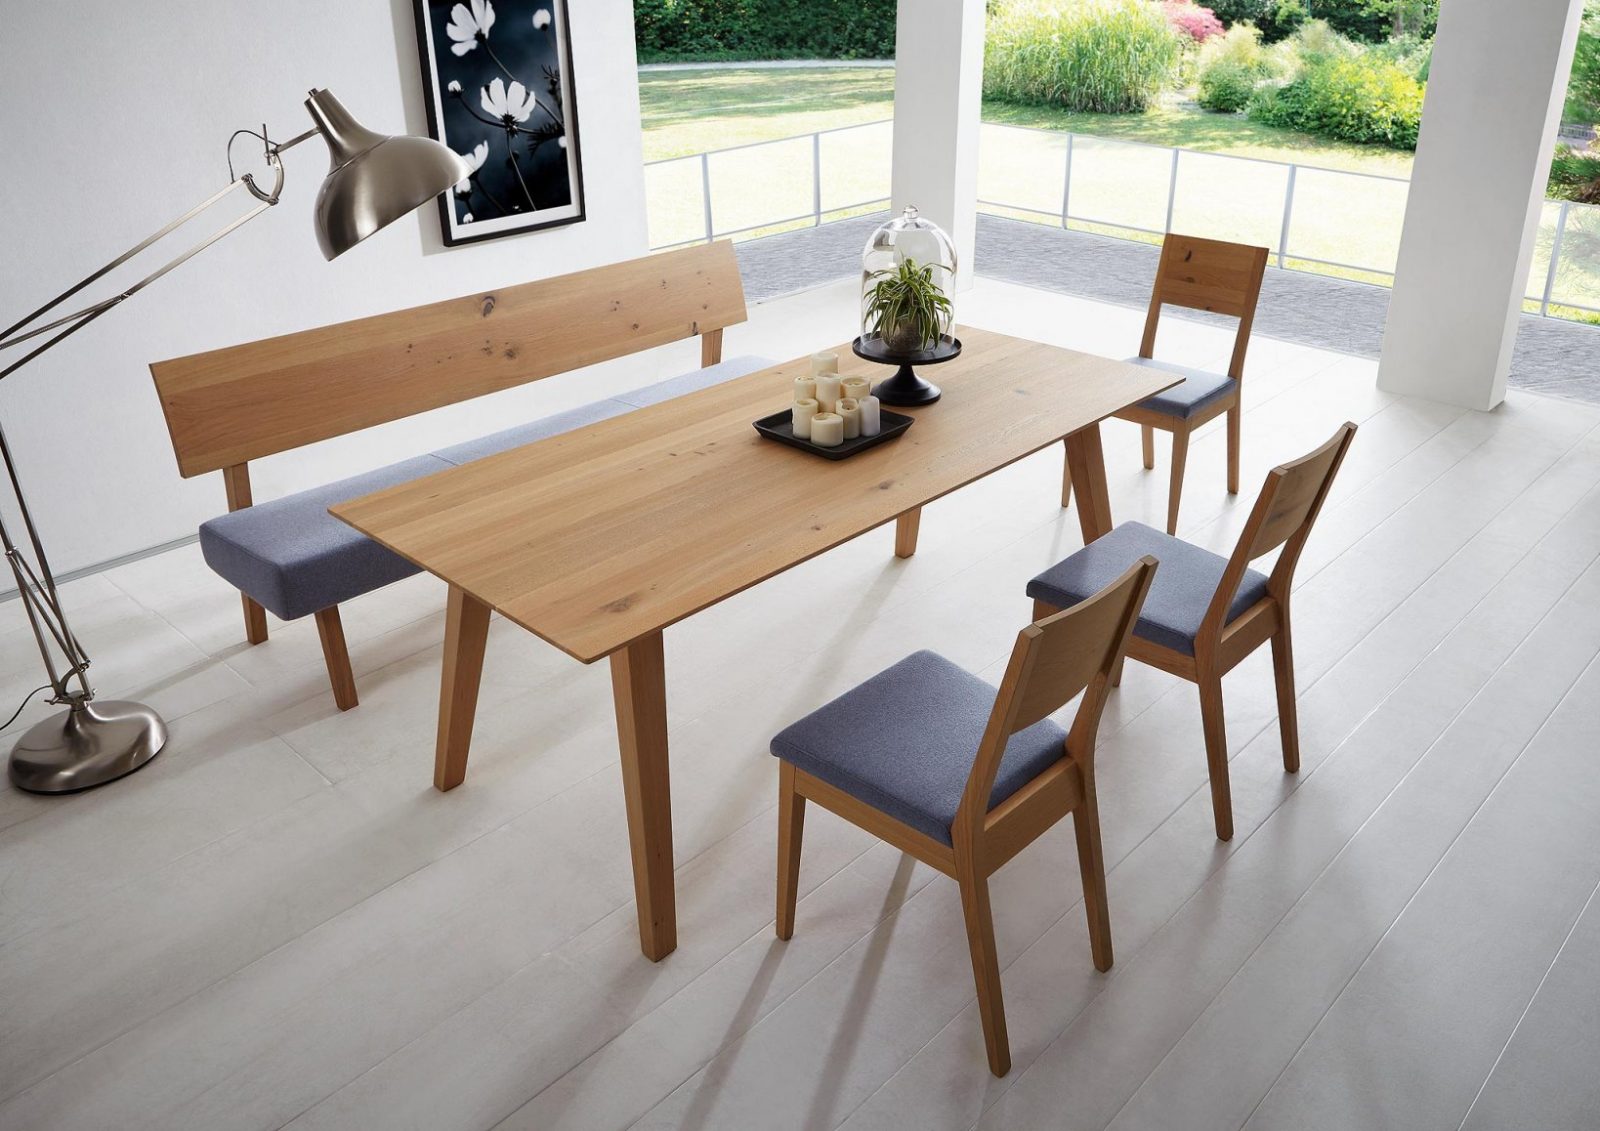 Silva – Schreinerei Eichenseher Möbel Essplatzmöbel Tische Und Stühle von Eckbank Für Runden Tisch Bild